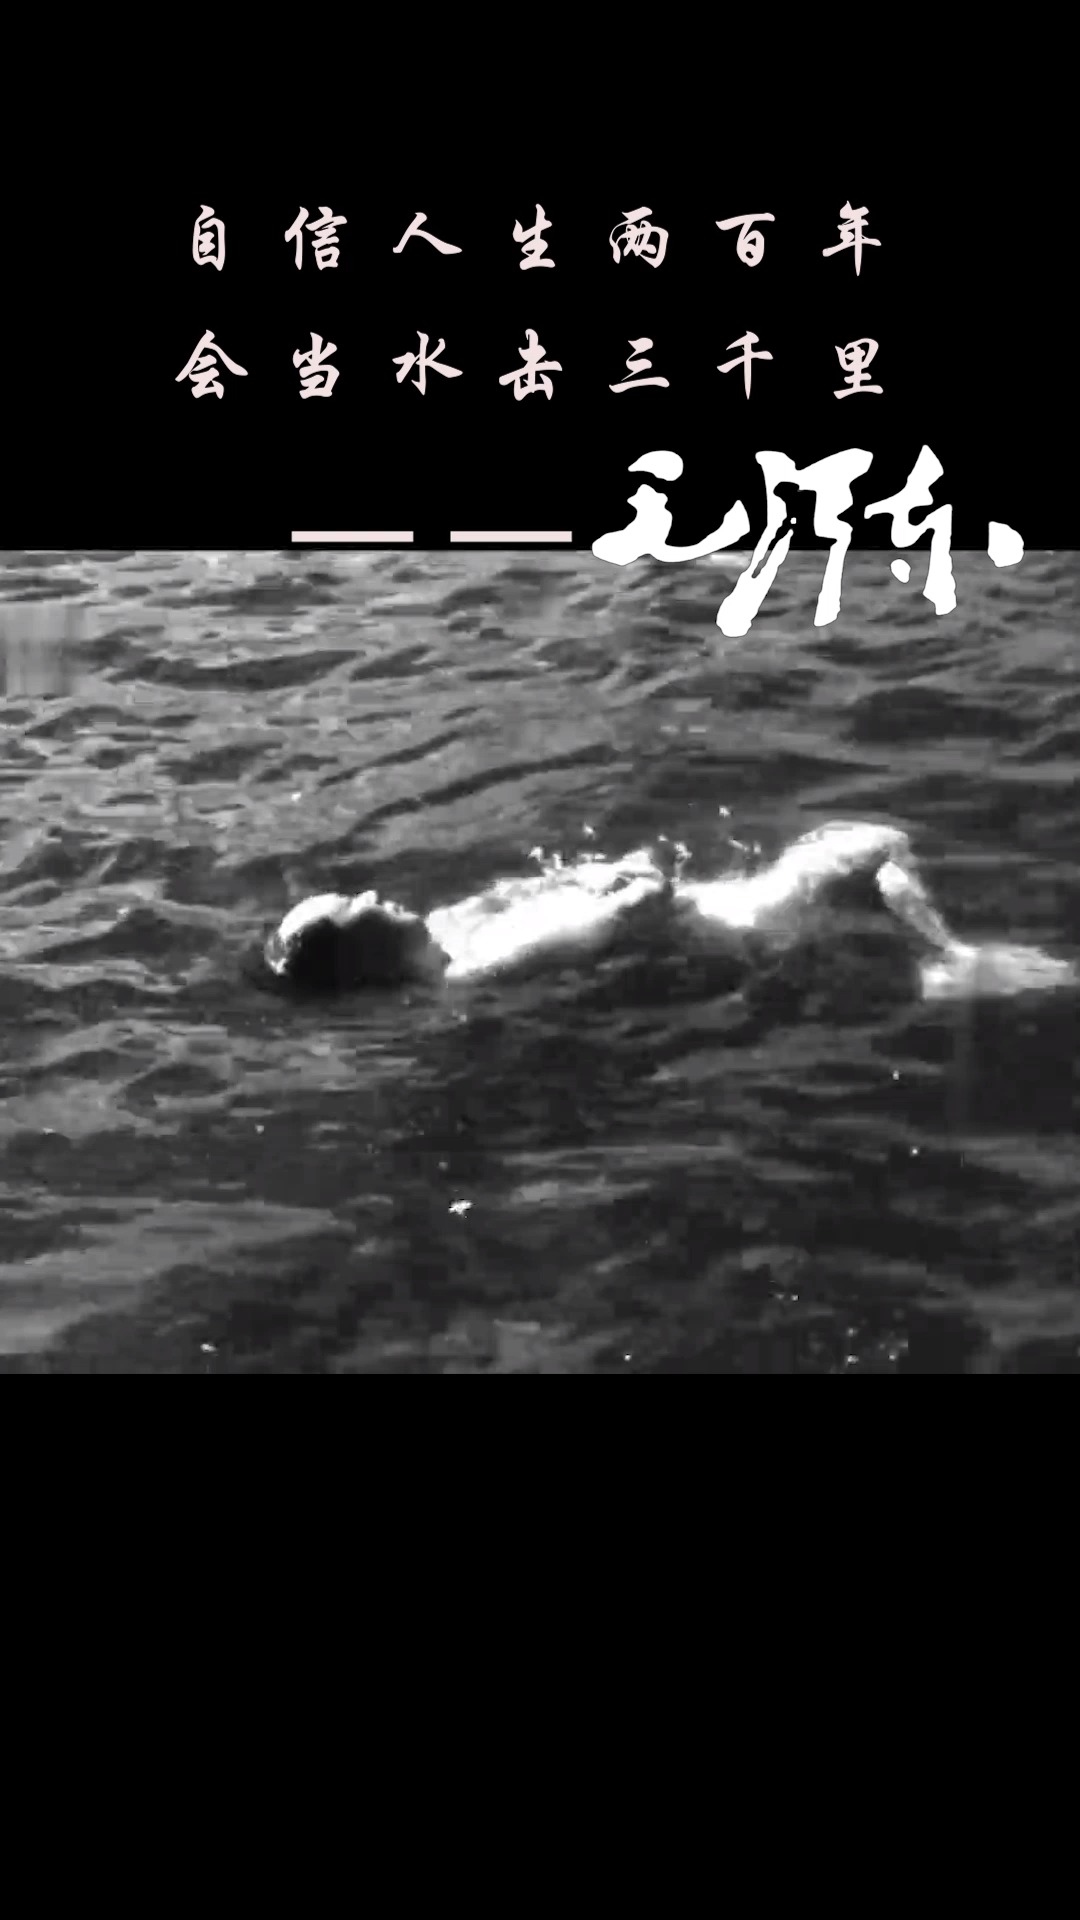 毛泽东喜欢游泳，尤其喜欢到汹涌波涛的大江大海中去搏击